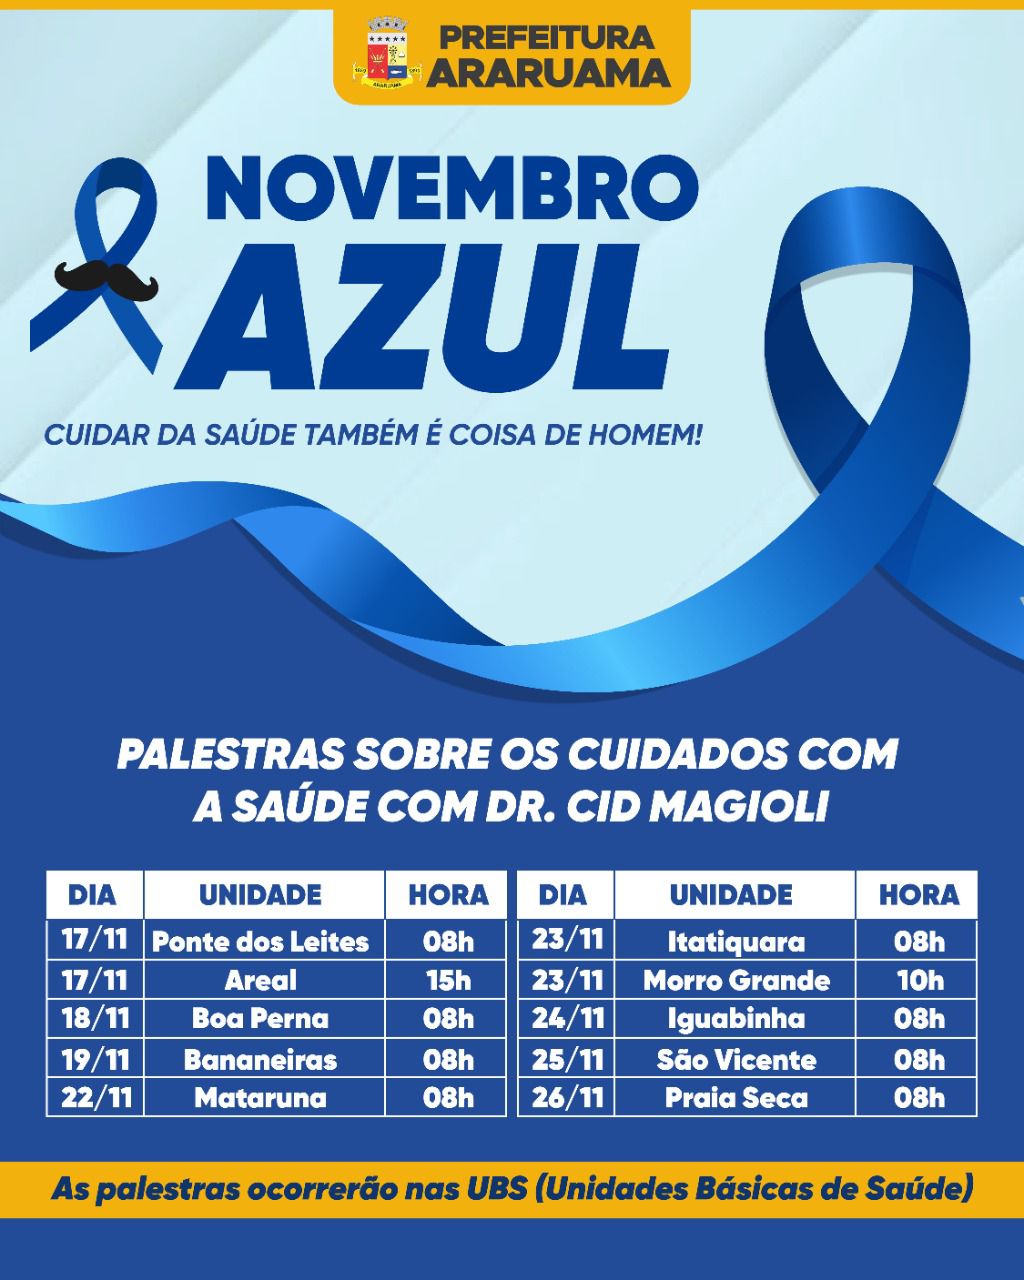 Prefeitura de Araruama vai realizar palestras para conscientizar sobre a saúde do homem durante  o Novembro Azul